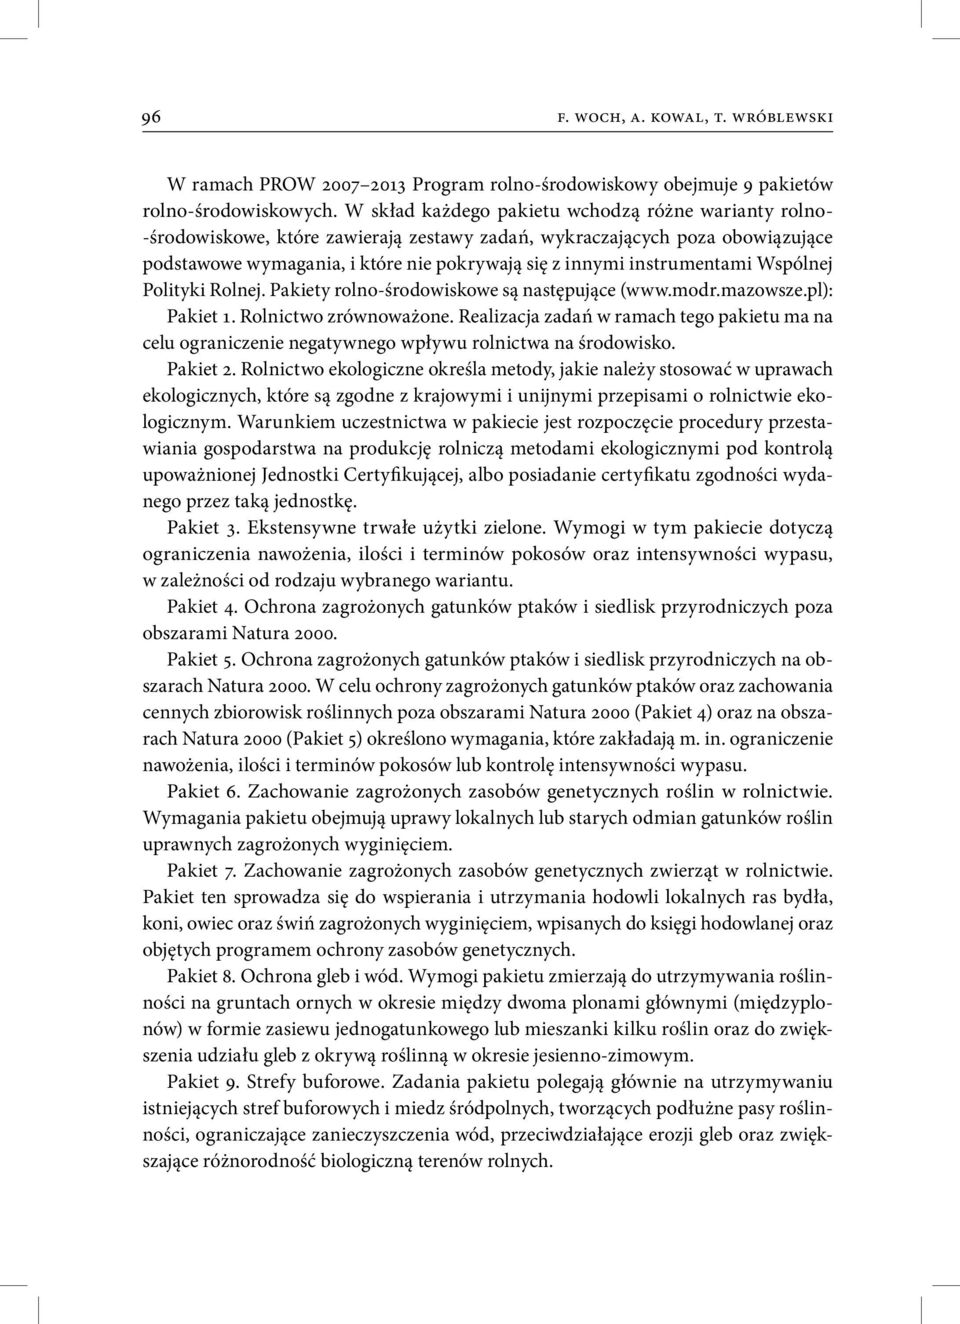 instrumentami Wspólnej Polityki Rolnej. Pakiety rolno-środowiskowe są następujące (www.modr.mazowsze.pl): Pakiet 1. Rolnictwo zrównoważone.